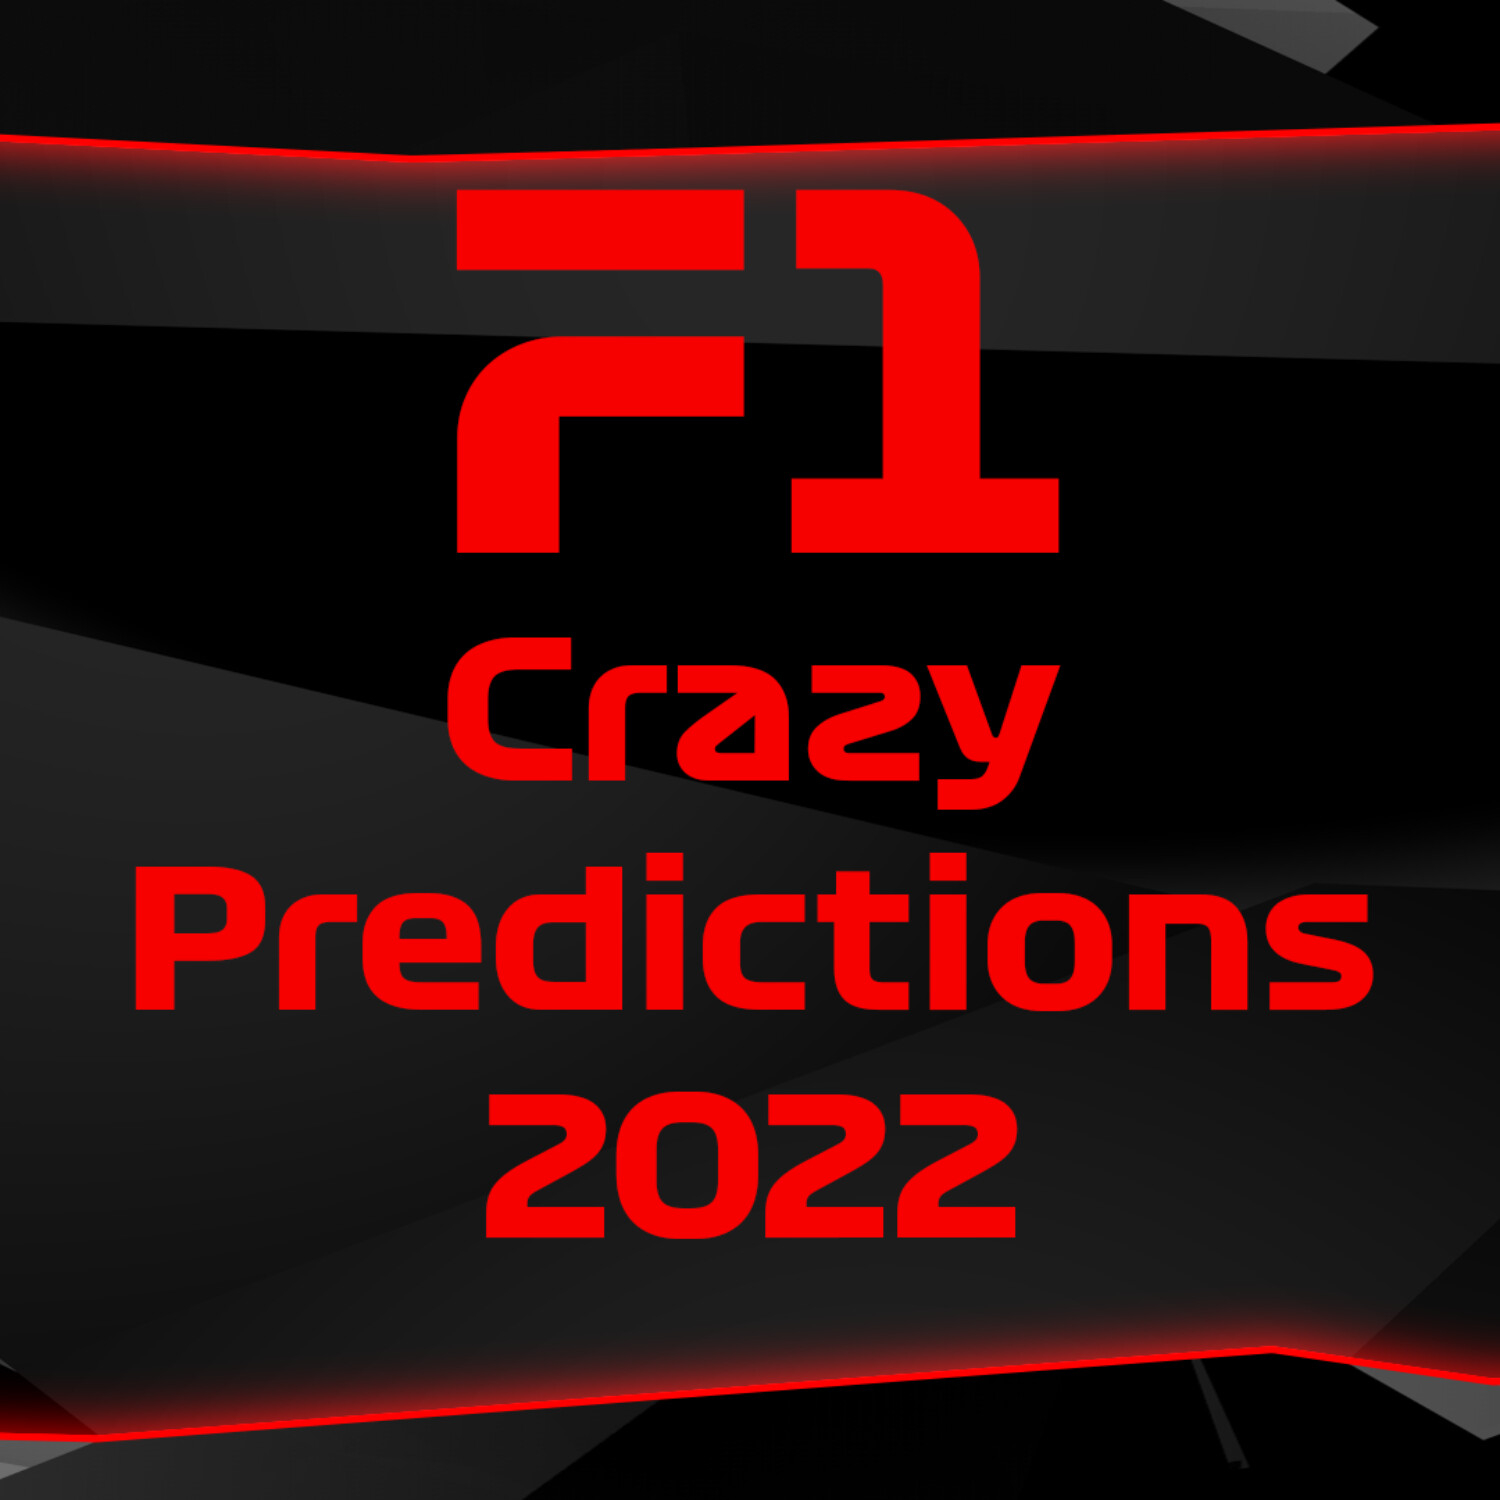 F1 Crazy Predictions 2022